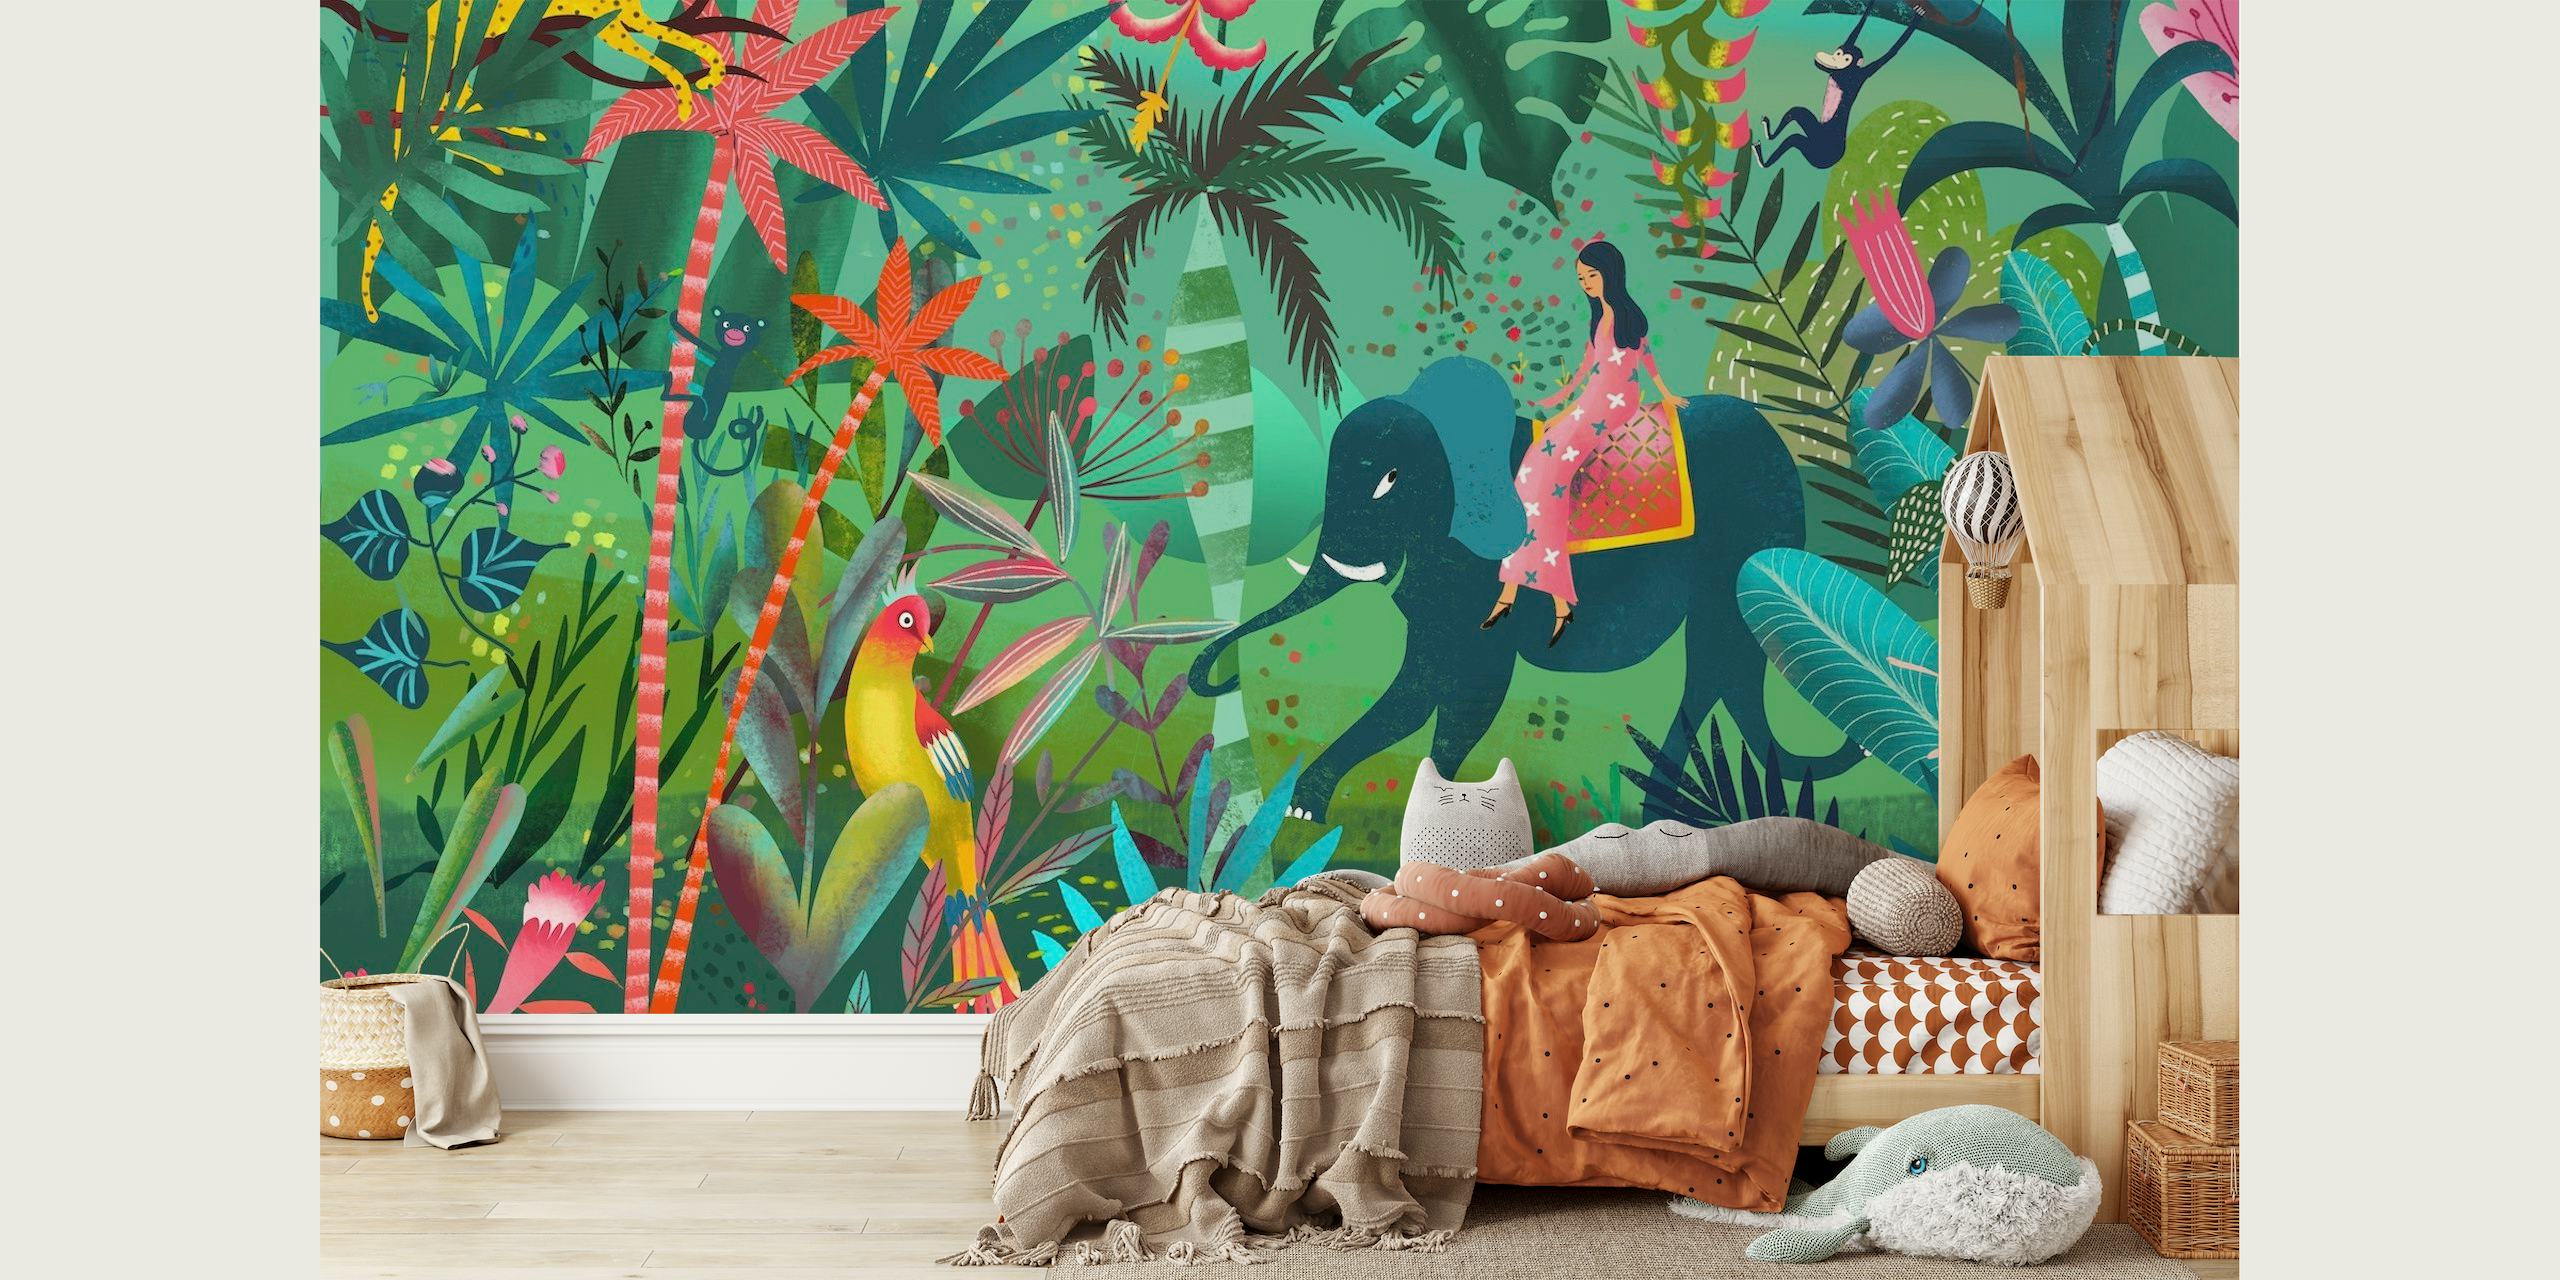 Murale colorée en forme d'éléphant dans la jungle avec des plantes tropicales et de la faune